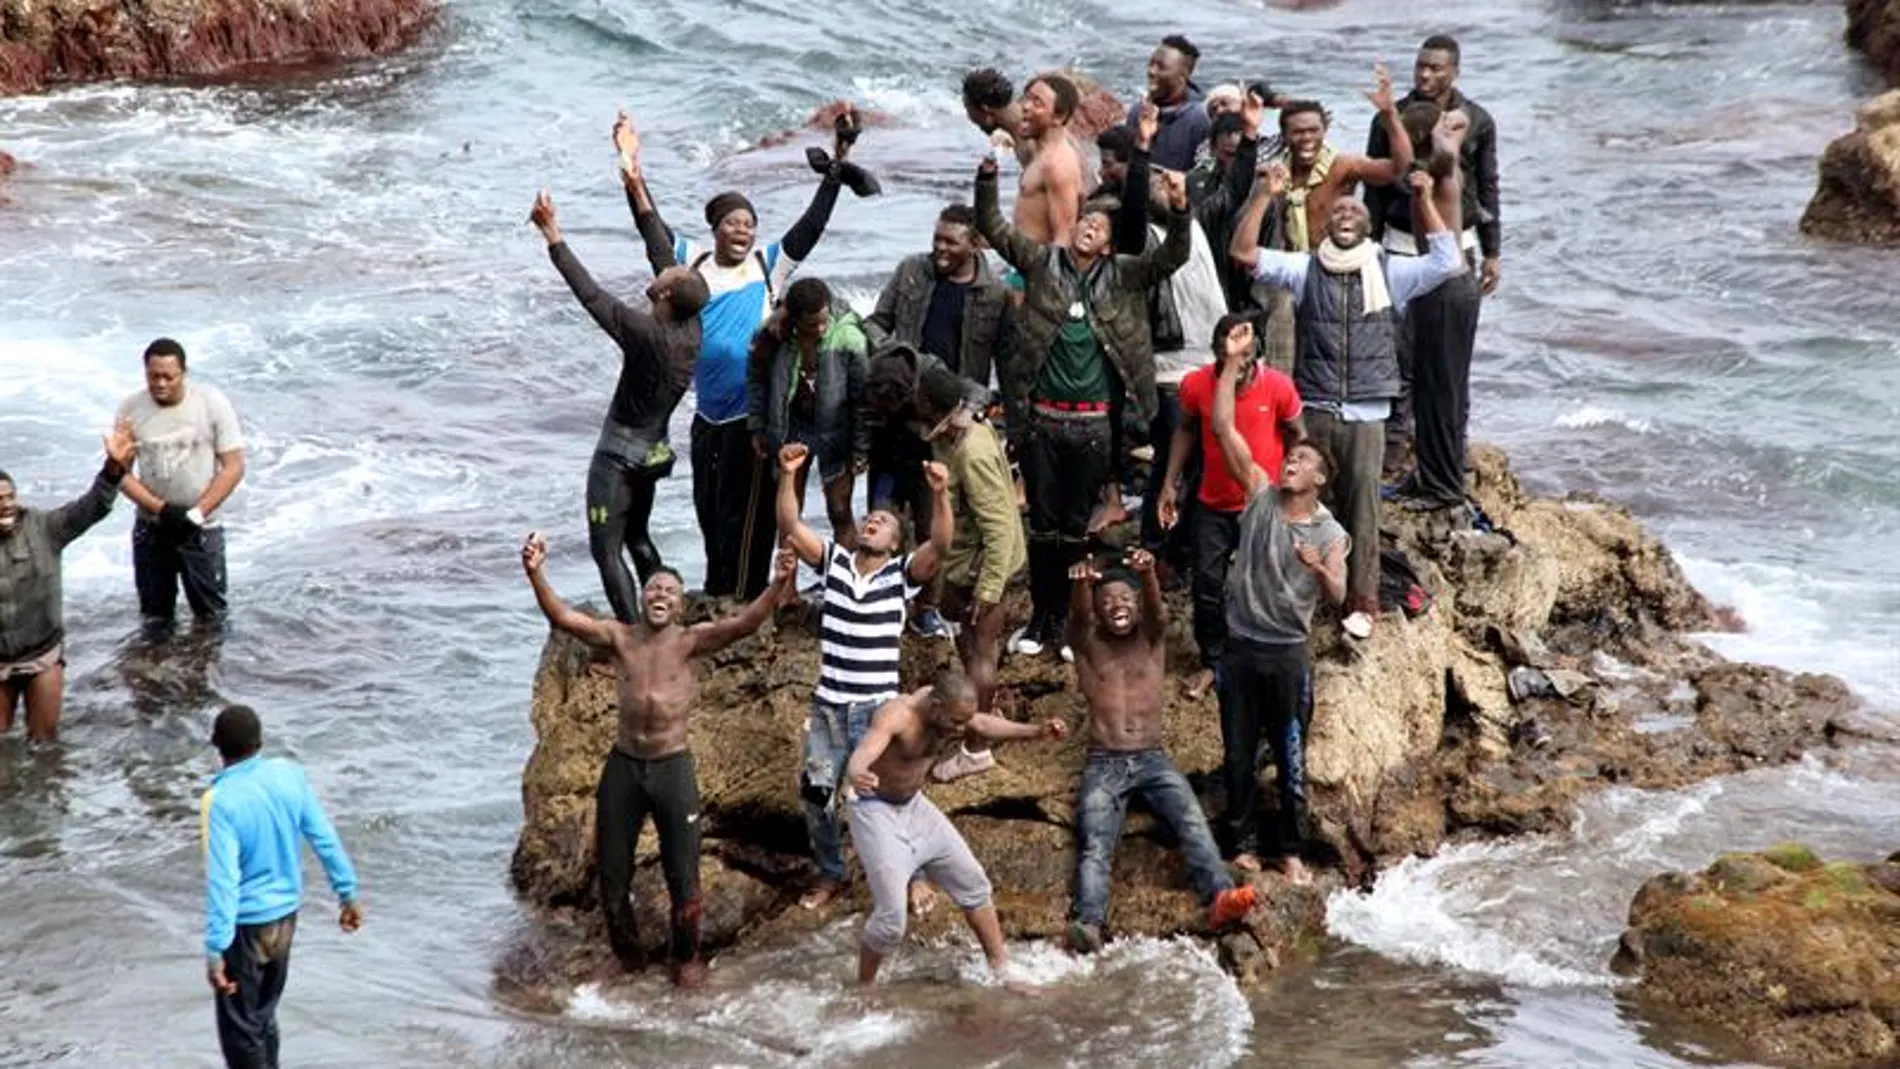 Unos 90 subsaharianos han conseguido entrar ilegalmente en Ceuta 